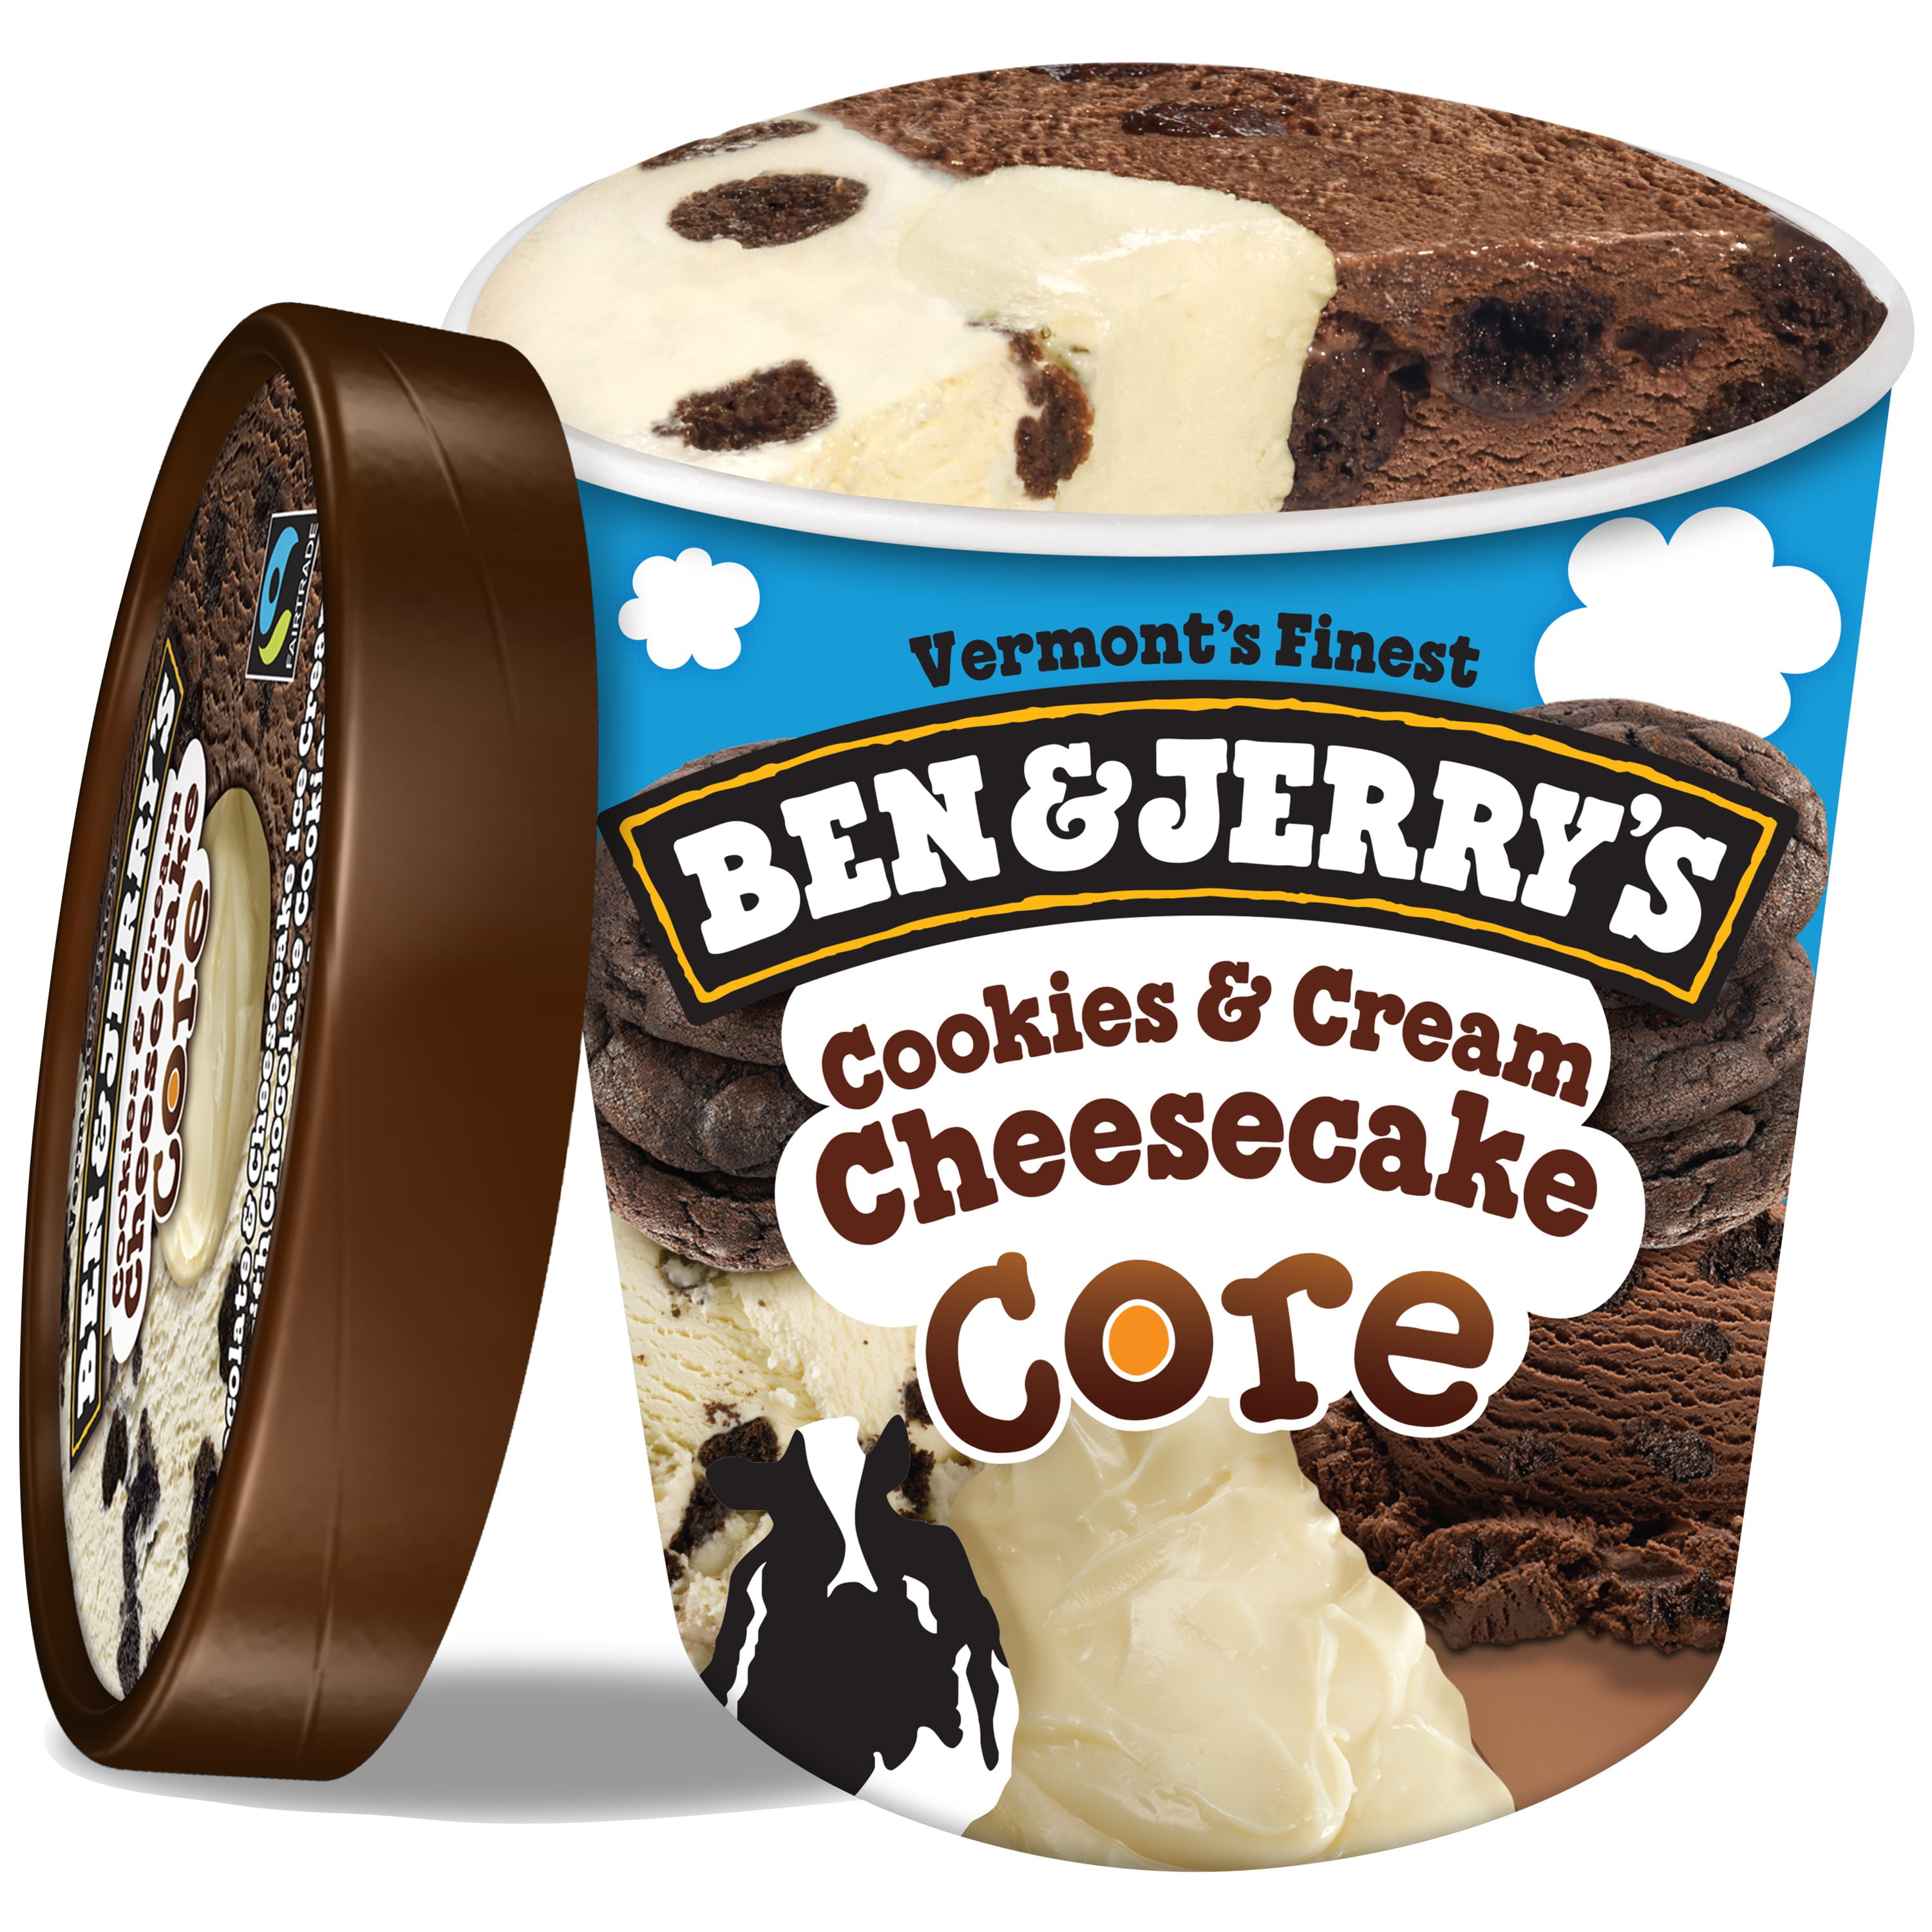 Мороженое Ben Jerry's cookie. Cookies and Cream мороженое. Мороженое с печеньем и шоколадом. Кофе чизкейк мороженое.